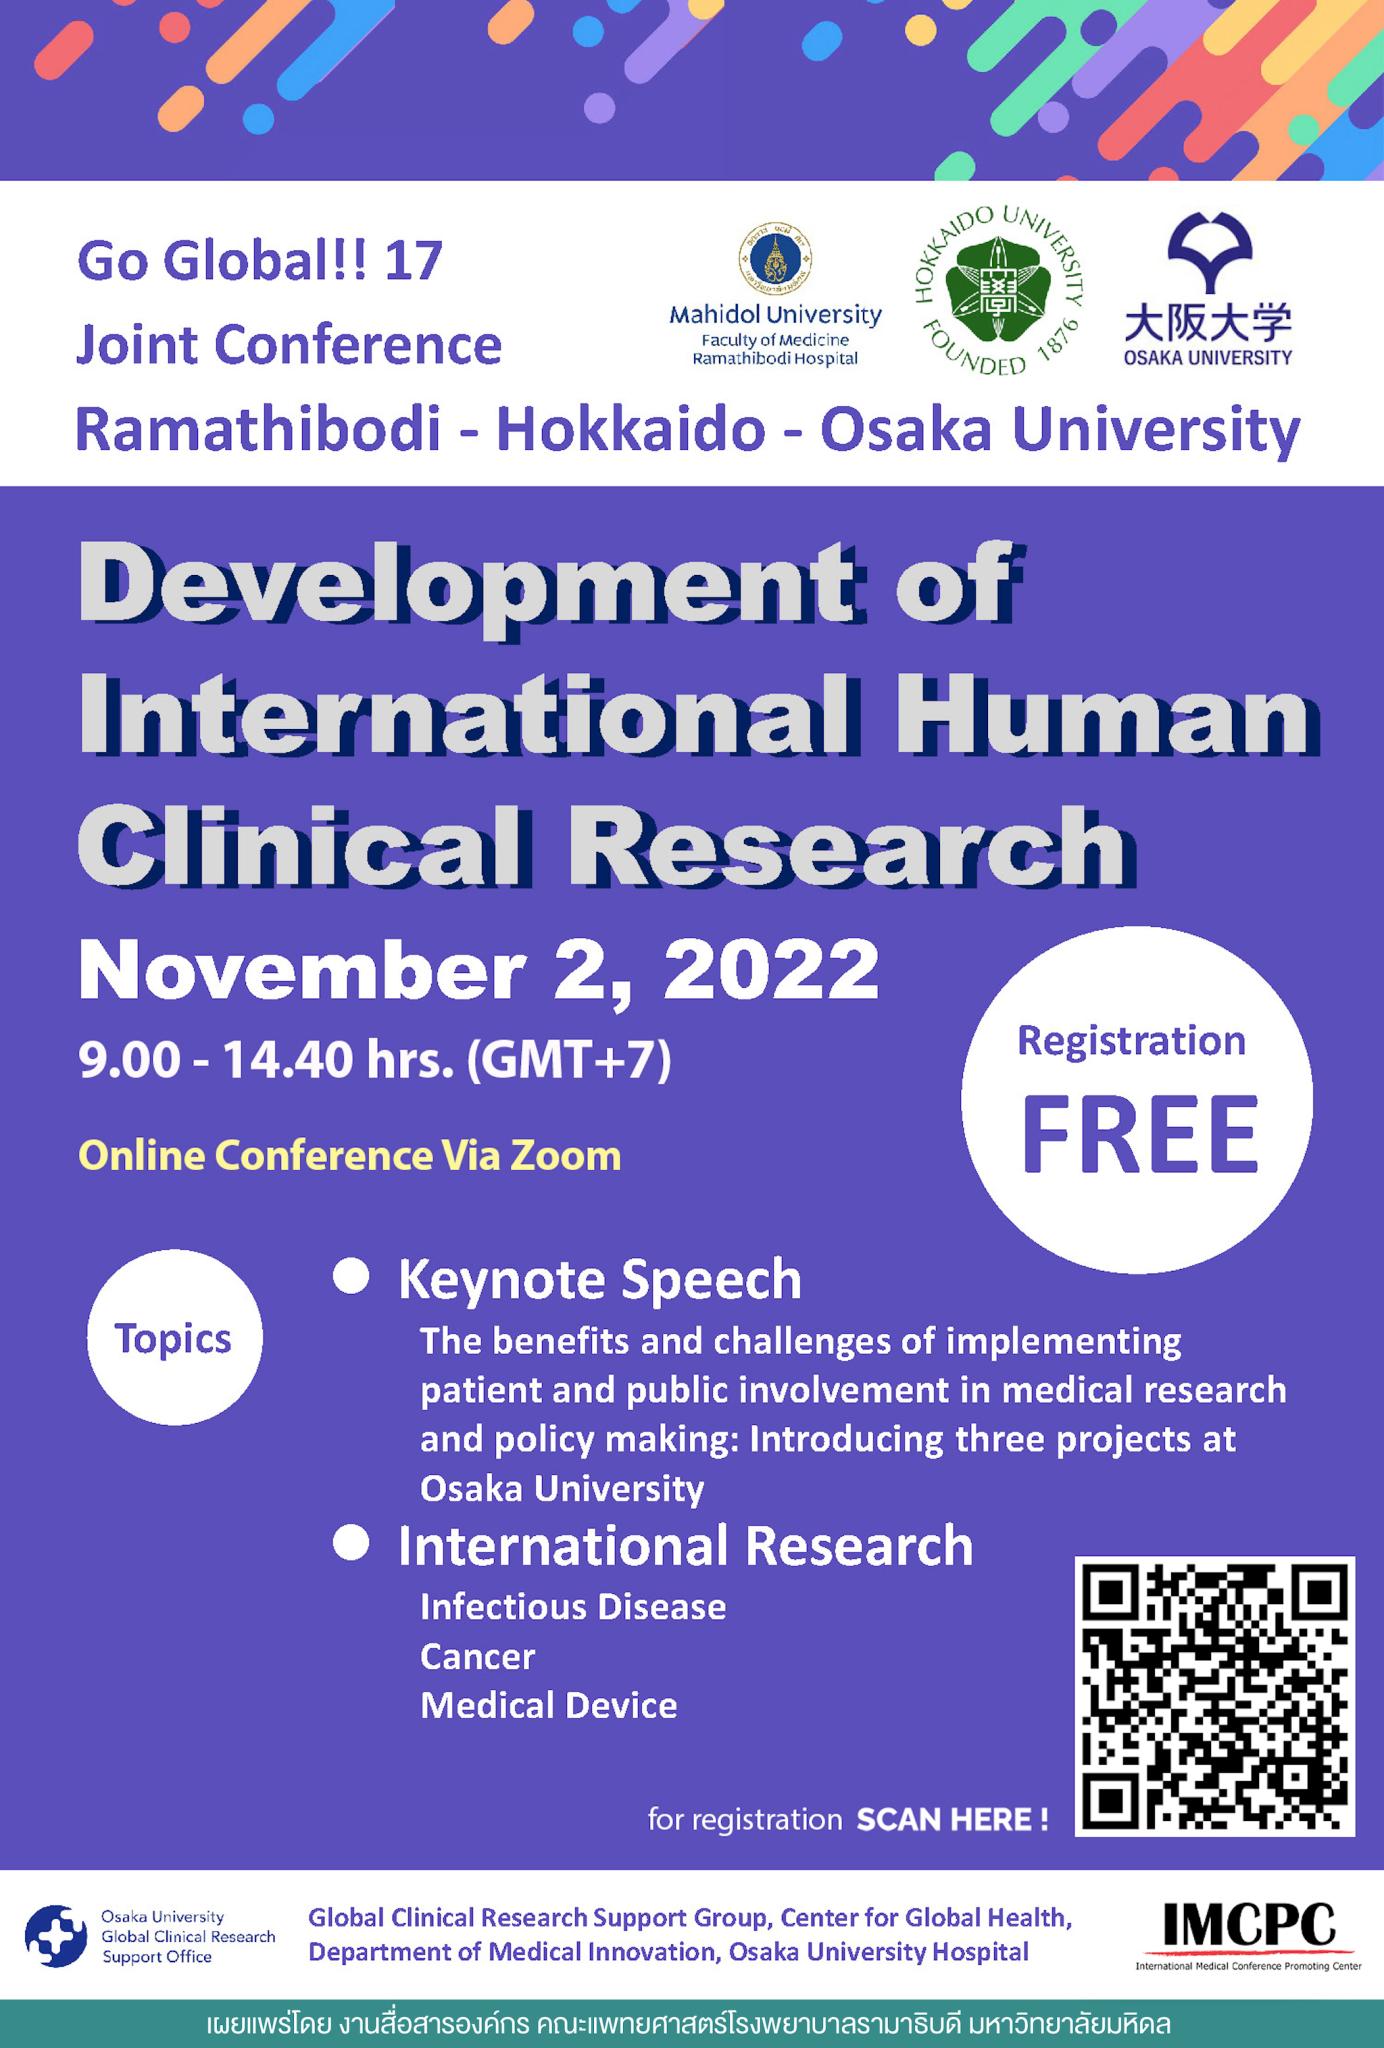 The 7th Joint Conference Ramathibodi - Hokkaido - Osaka University: Development of International Human Clinical Research